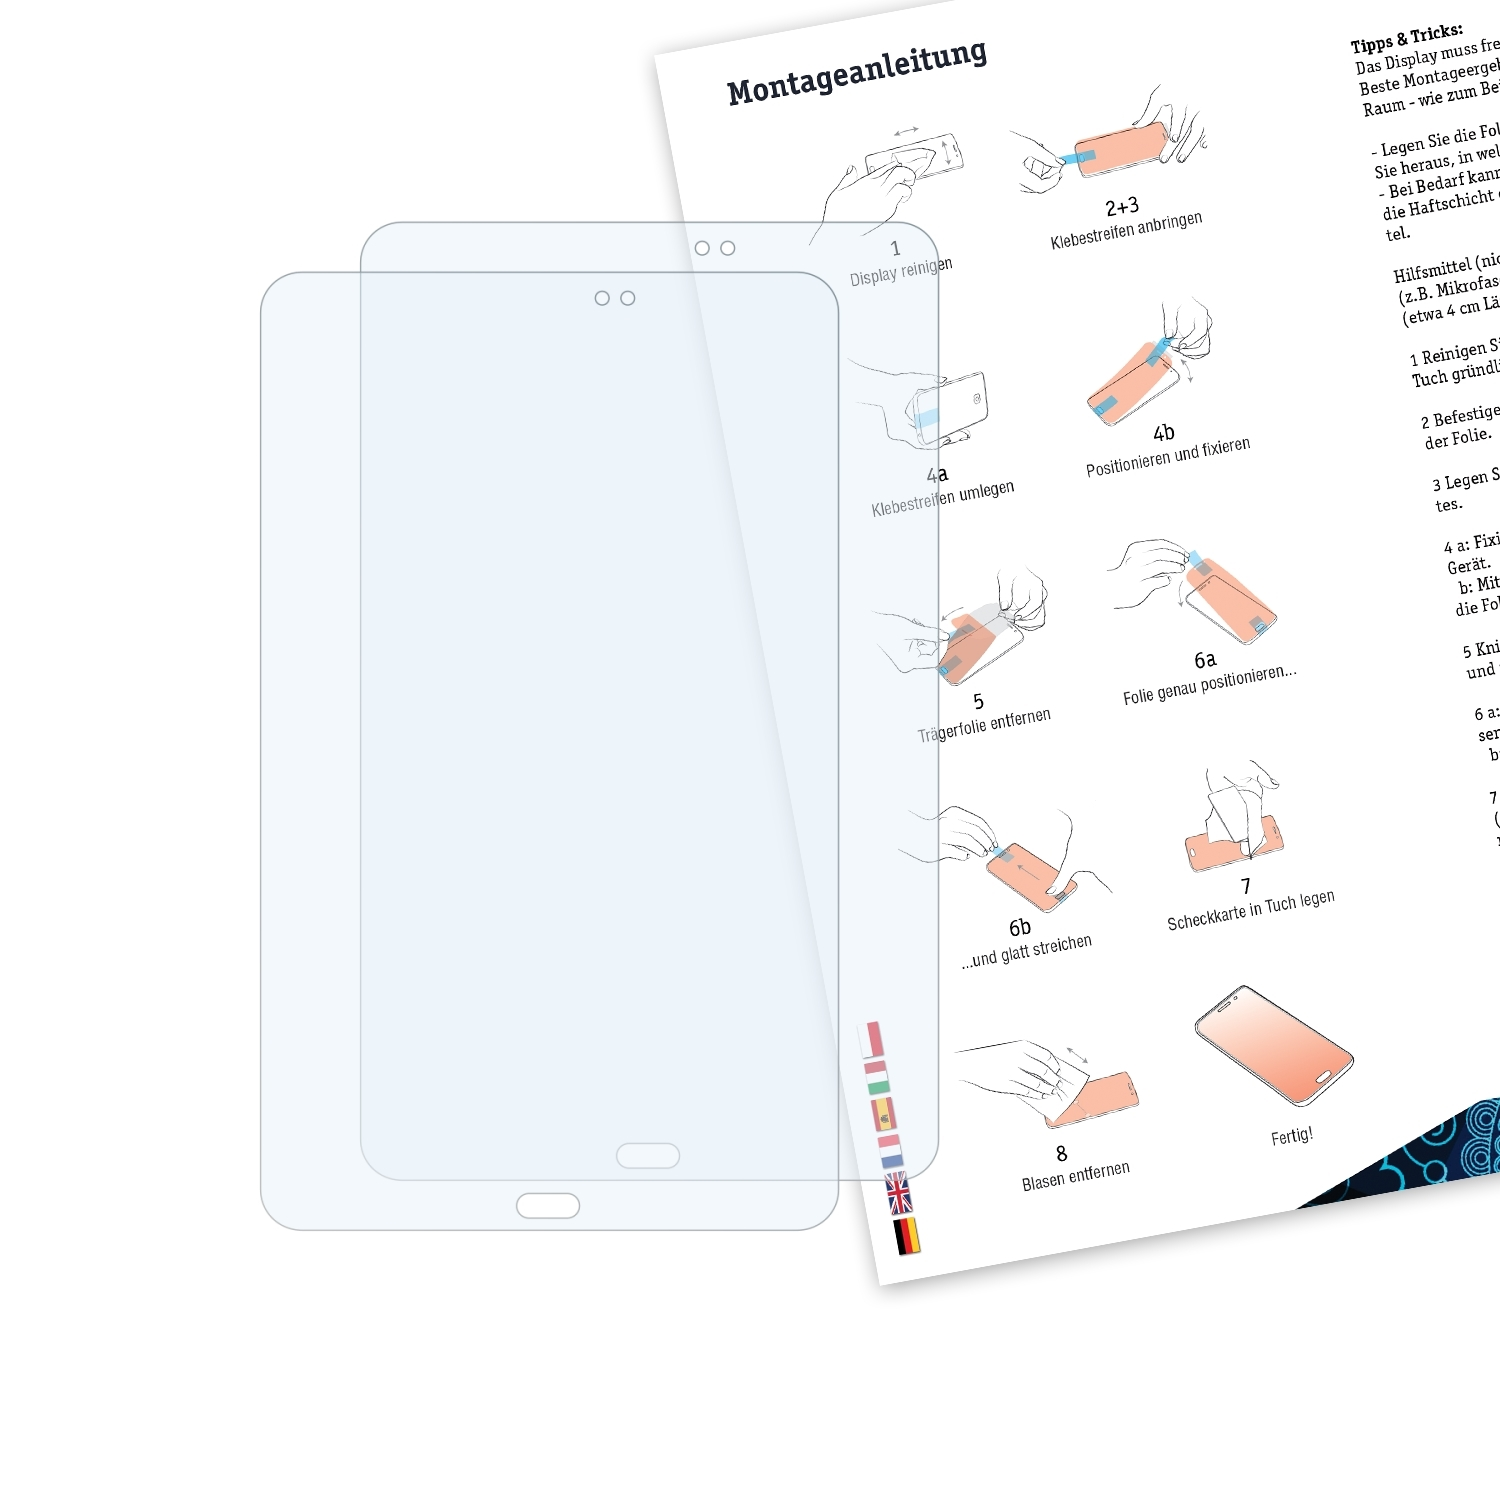 BRUNI 2x Basics-Clear Schutzfolie(für Samsung Galaxy Tab (2018)) 10.1 A